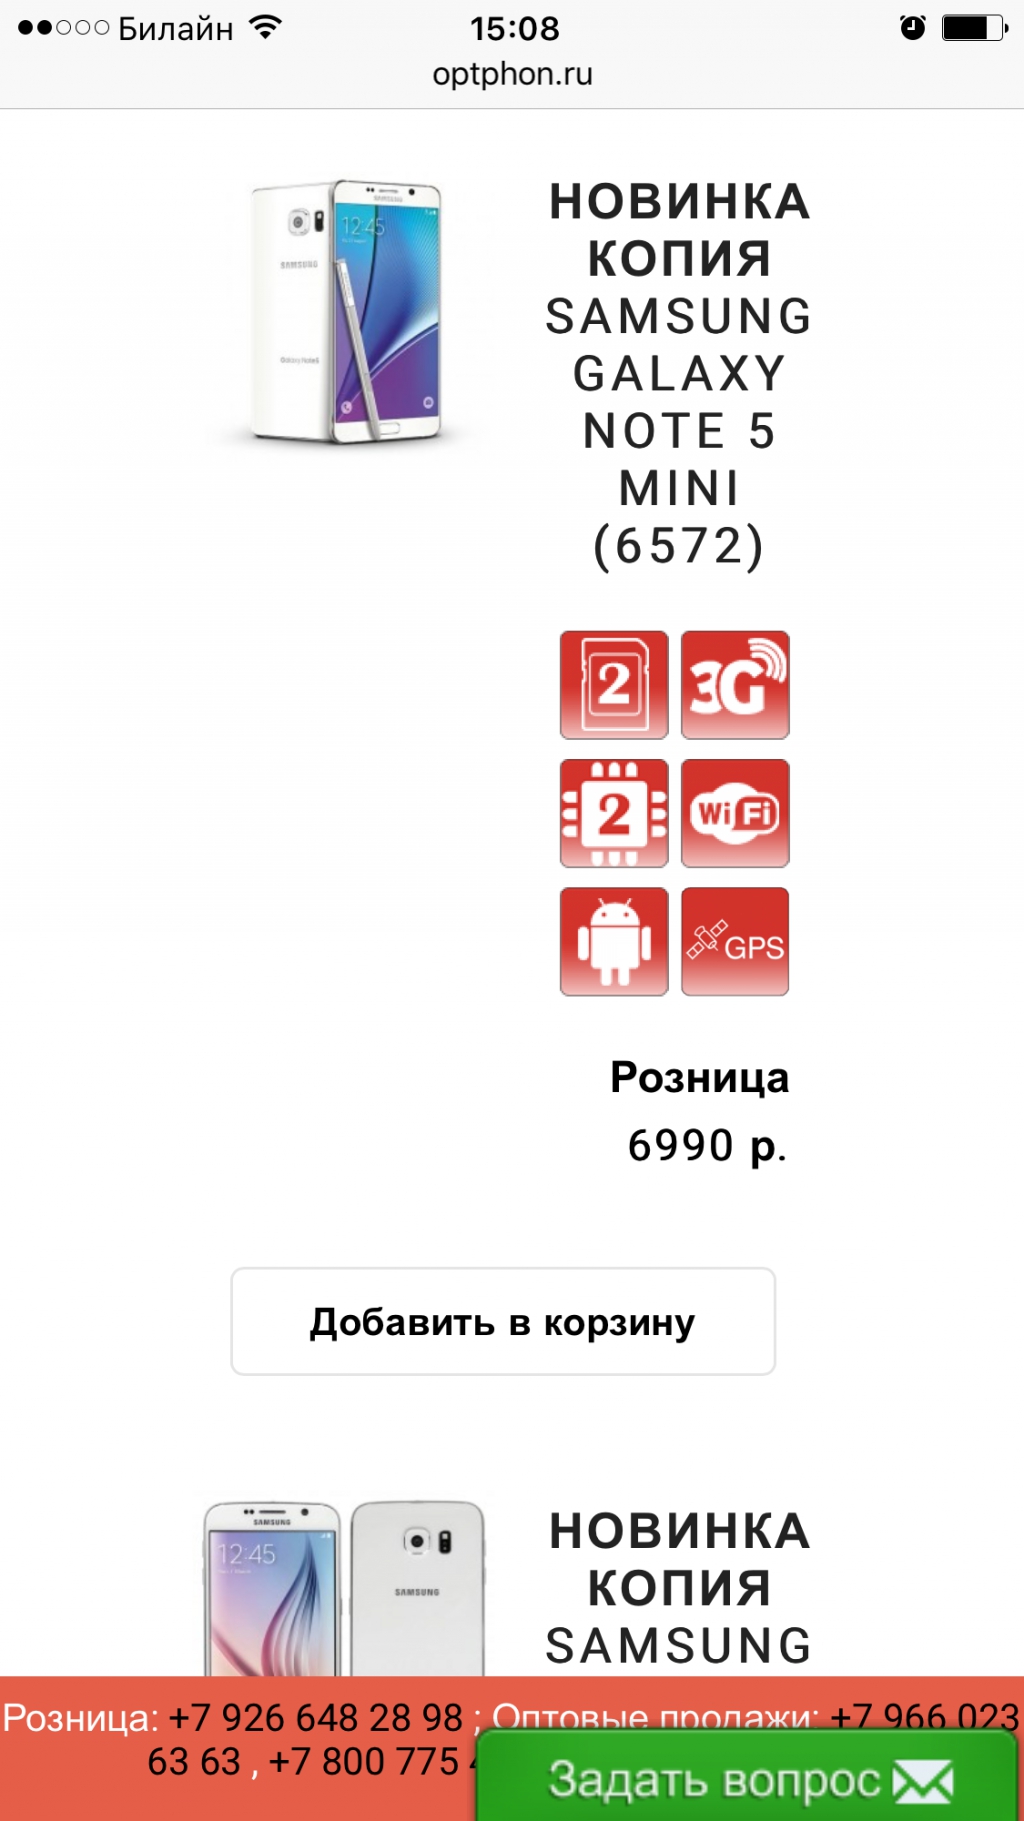 Интернет-магазин optphon.ru - Уважаемые покупатели!